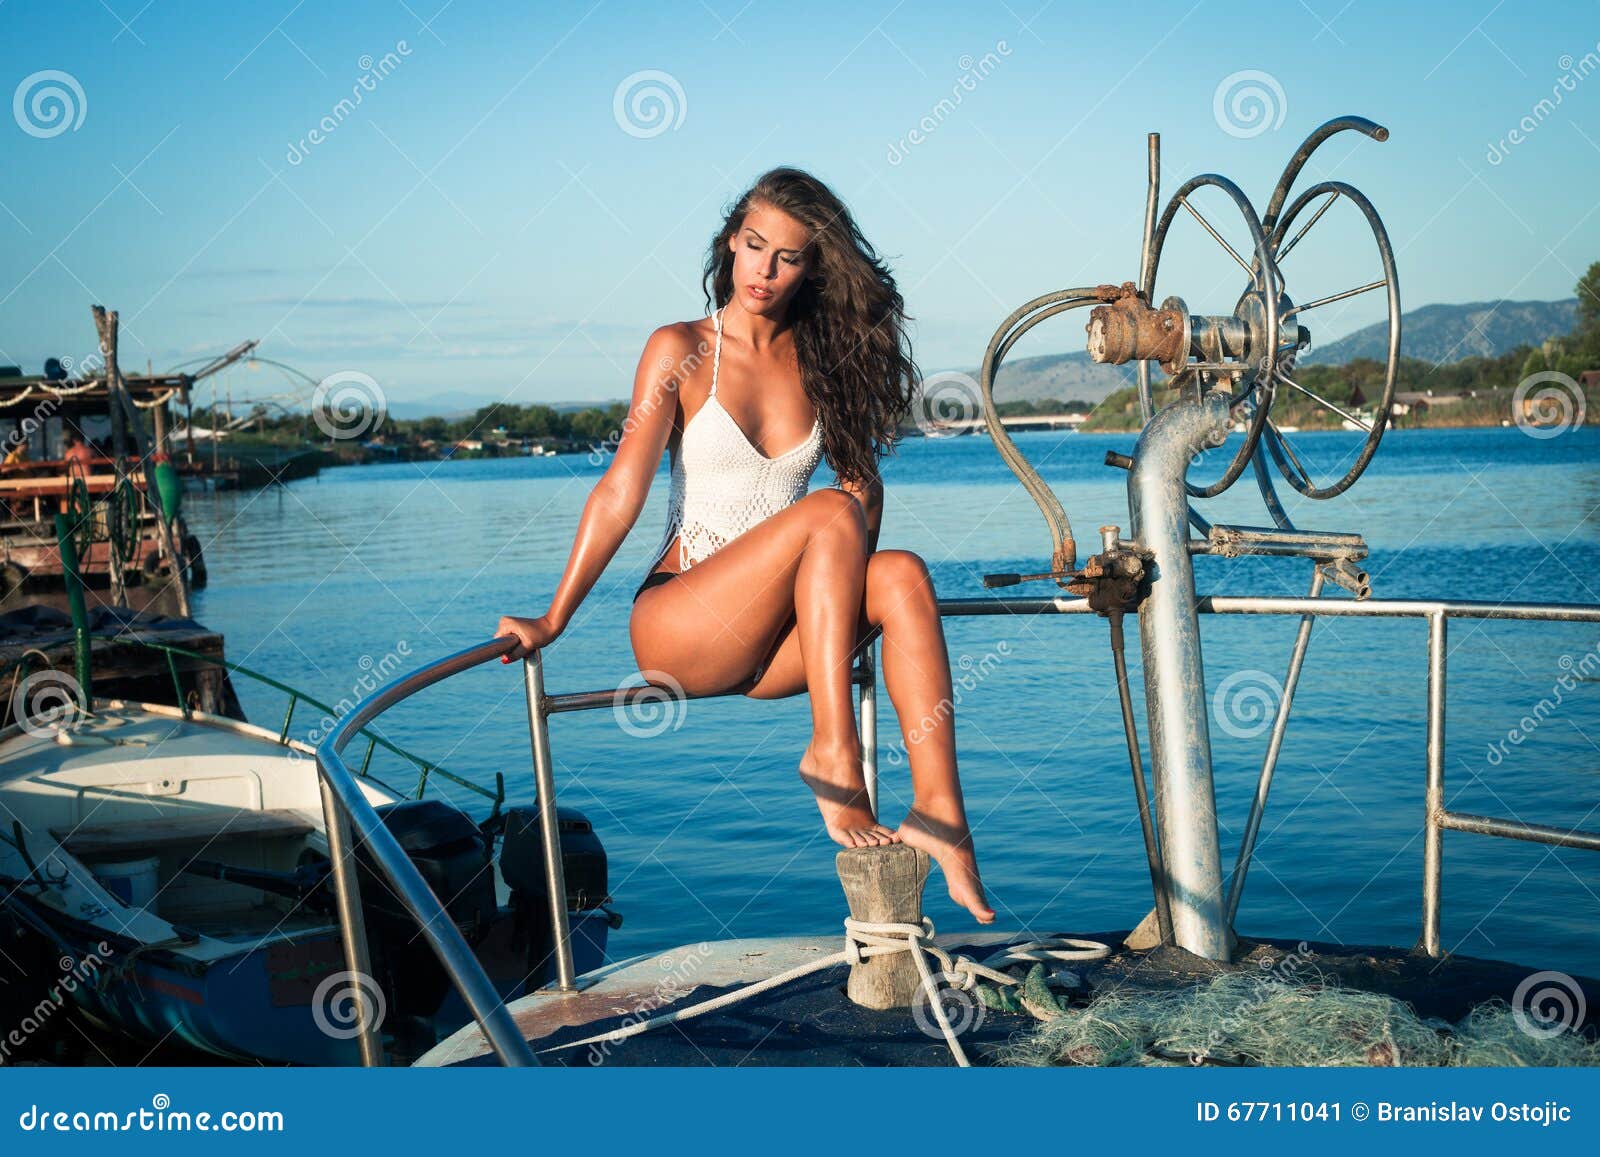 Woman Pretty Woman Bathing Suit Pretty Woman Woman Fishing pirn comics